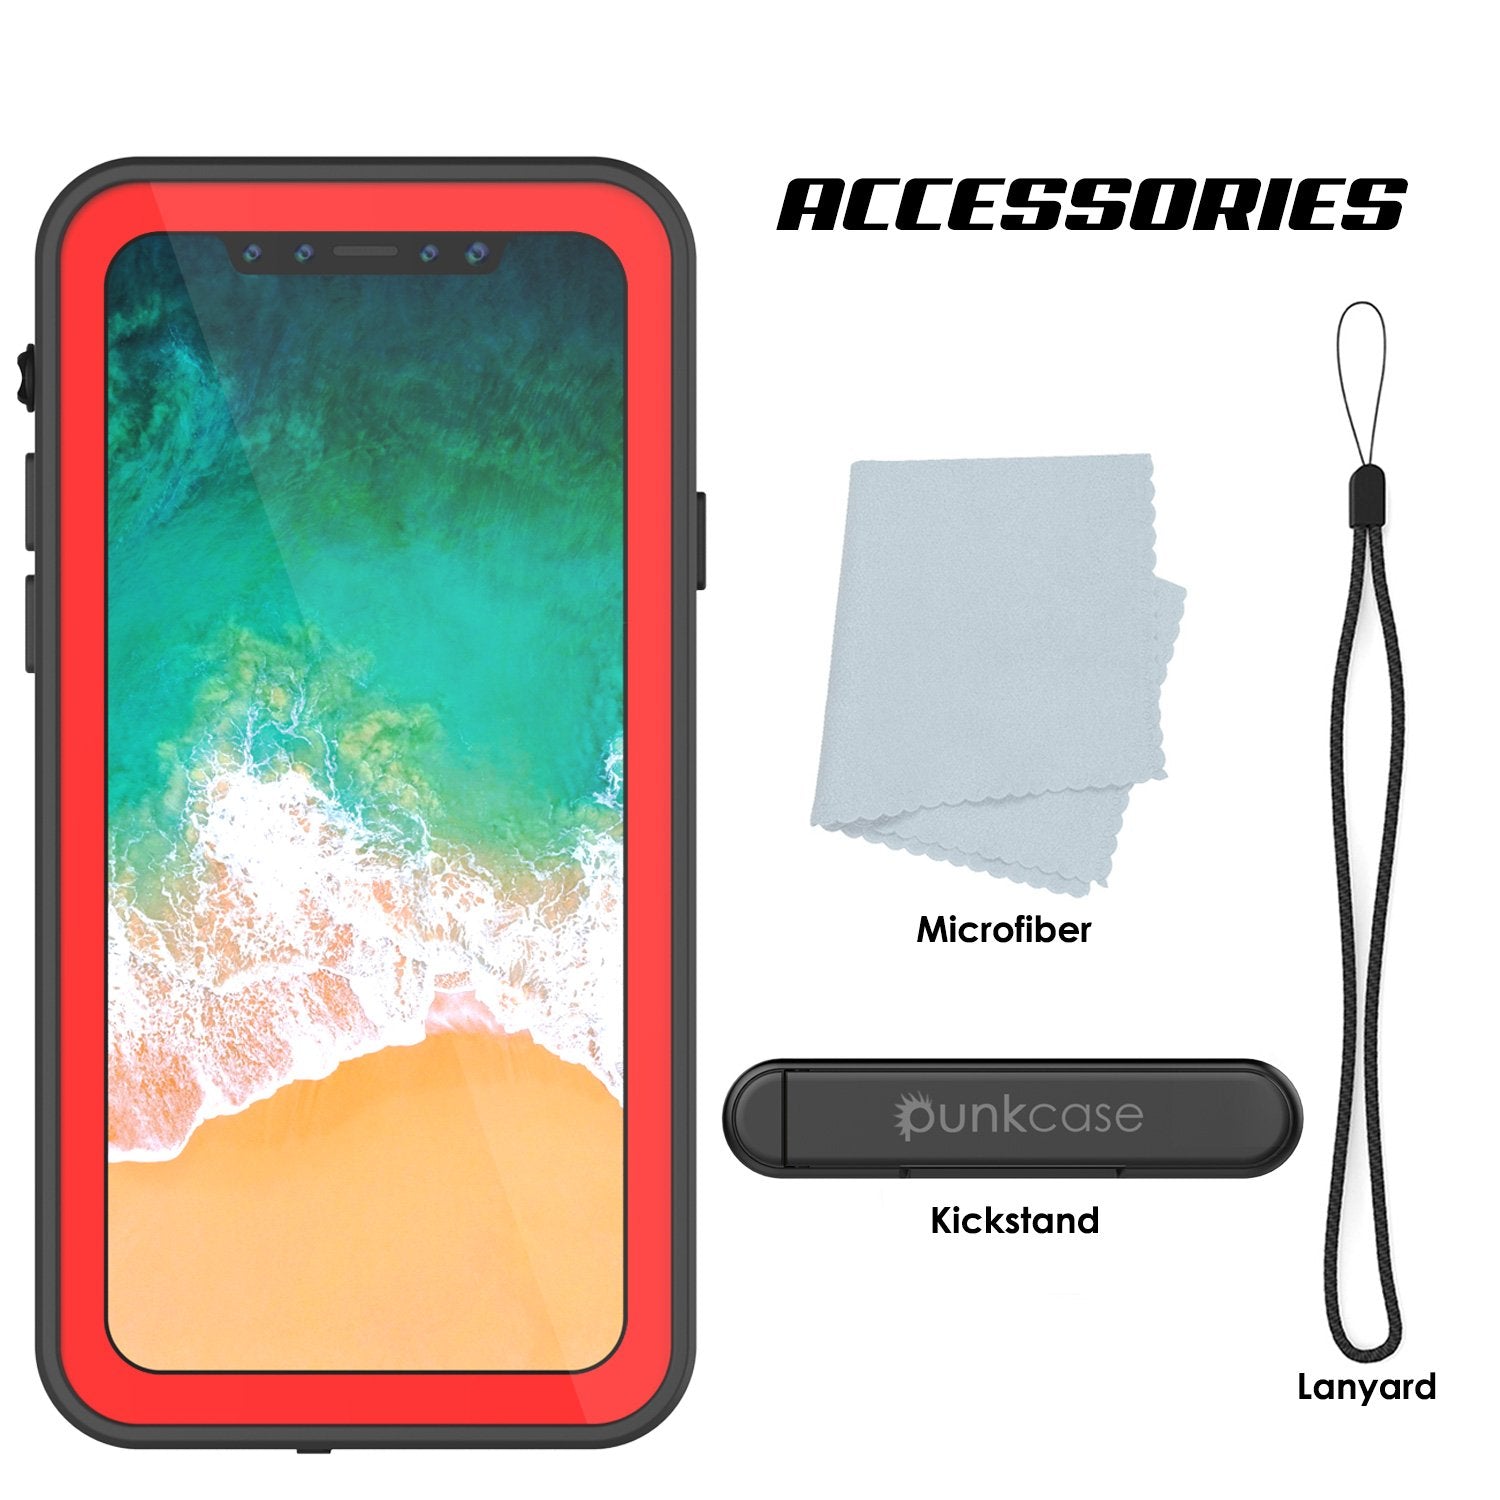 iPhone X Waterproof IP68 Case, Punkcase [Red] [StudStar Series] [Slim Fit] [Dirtproof]